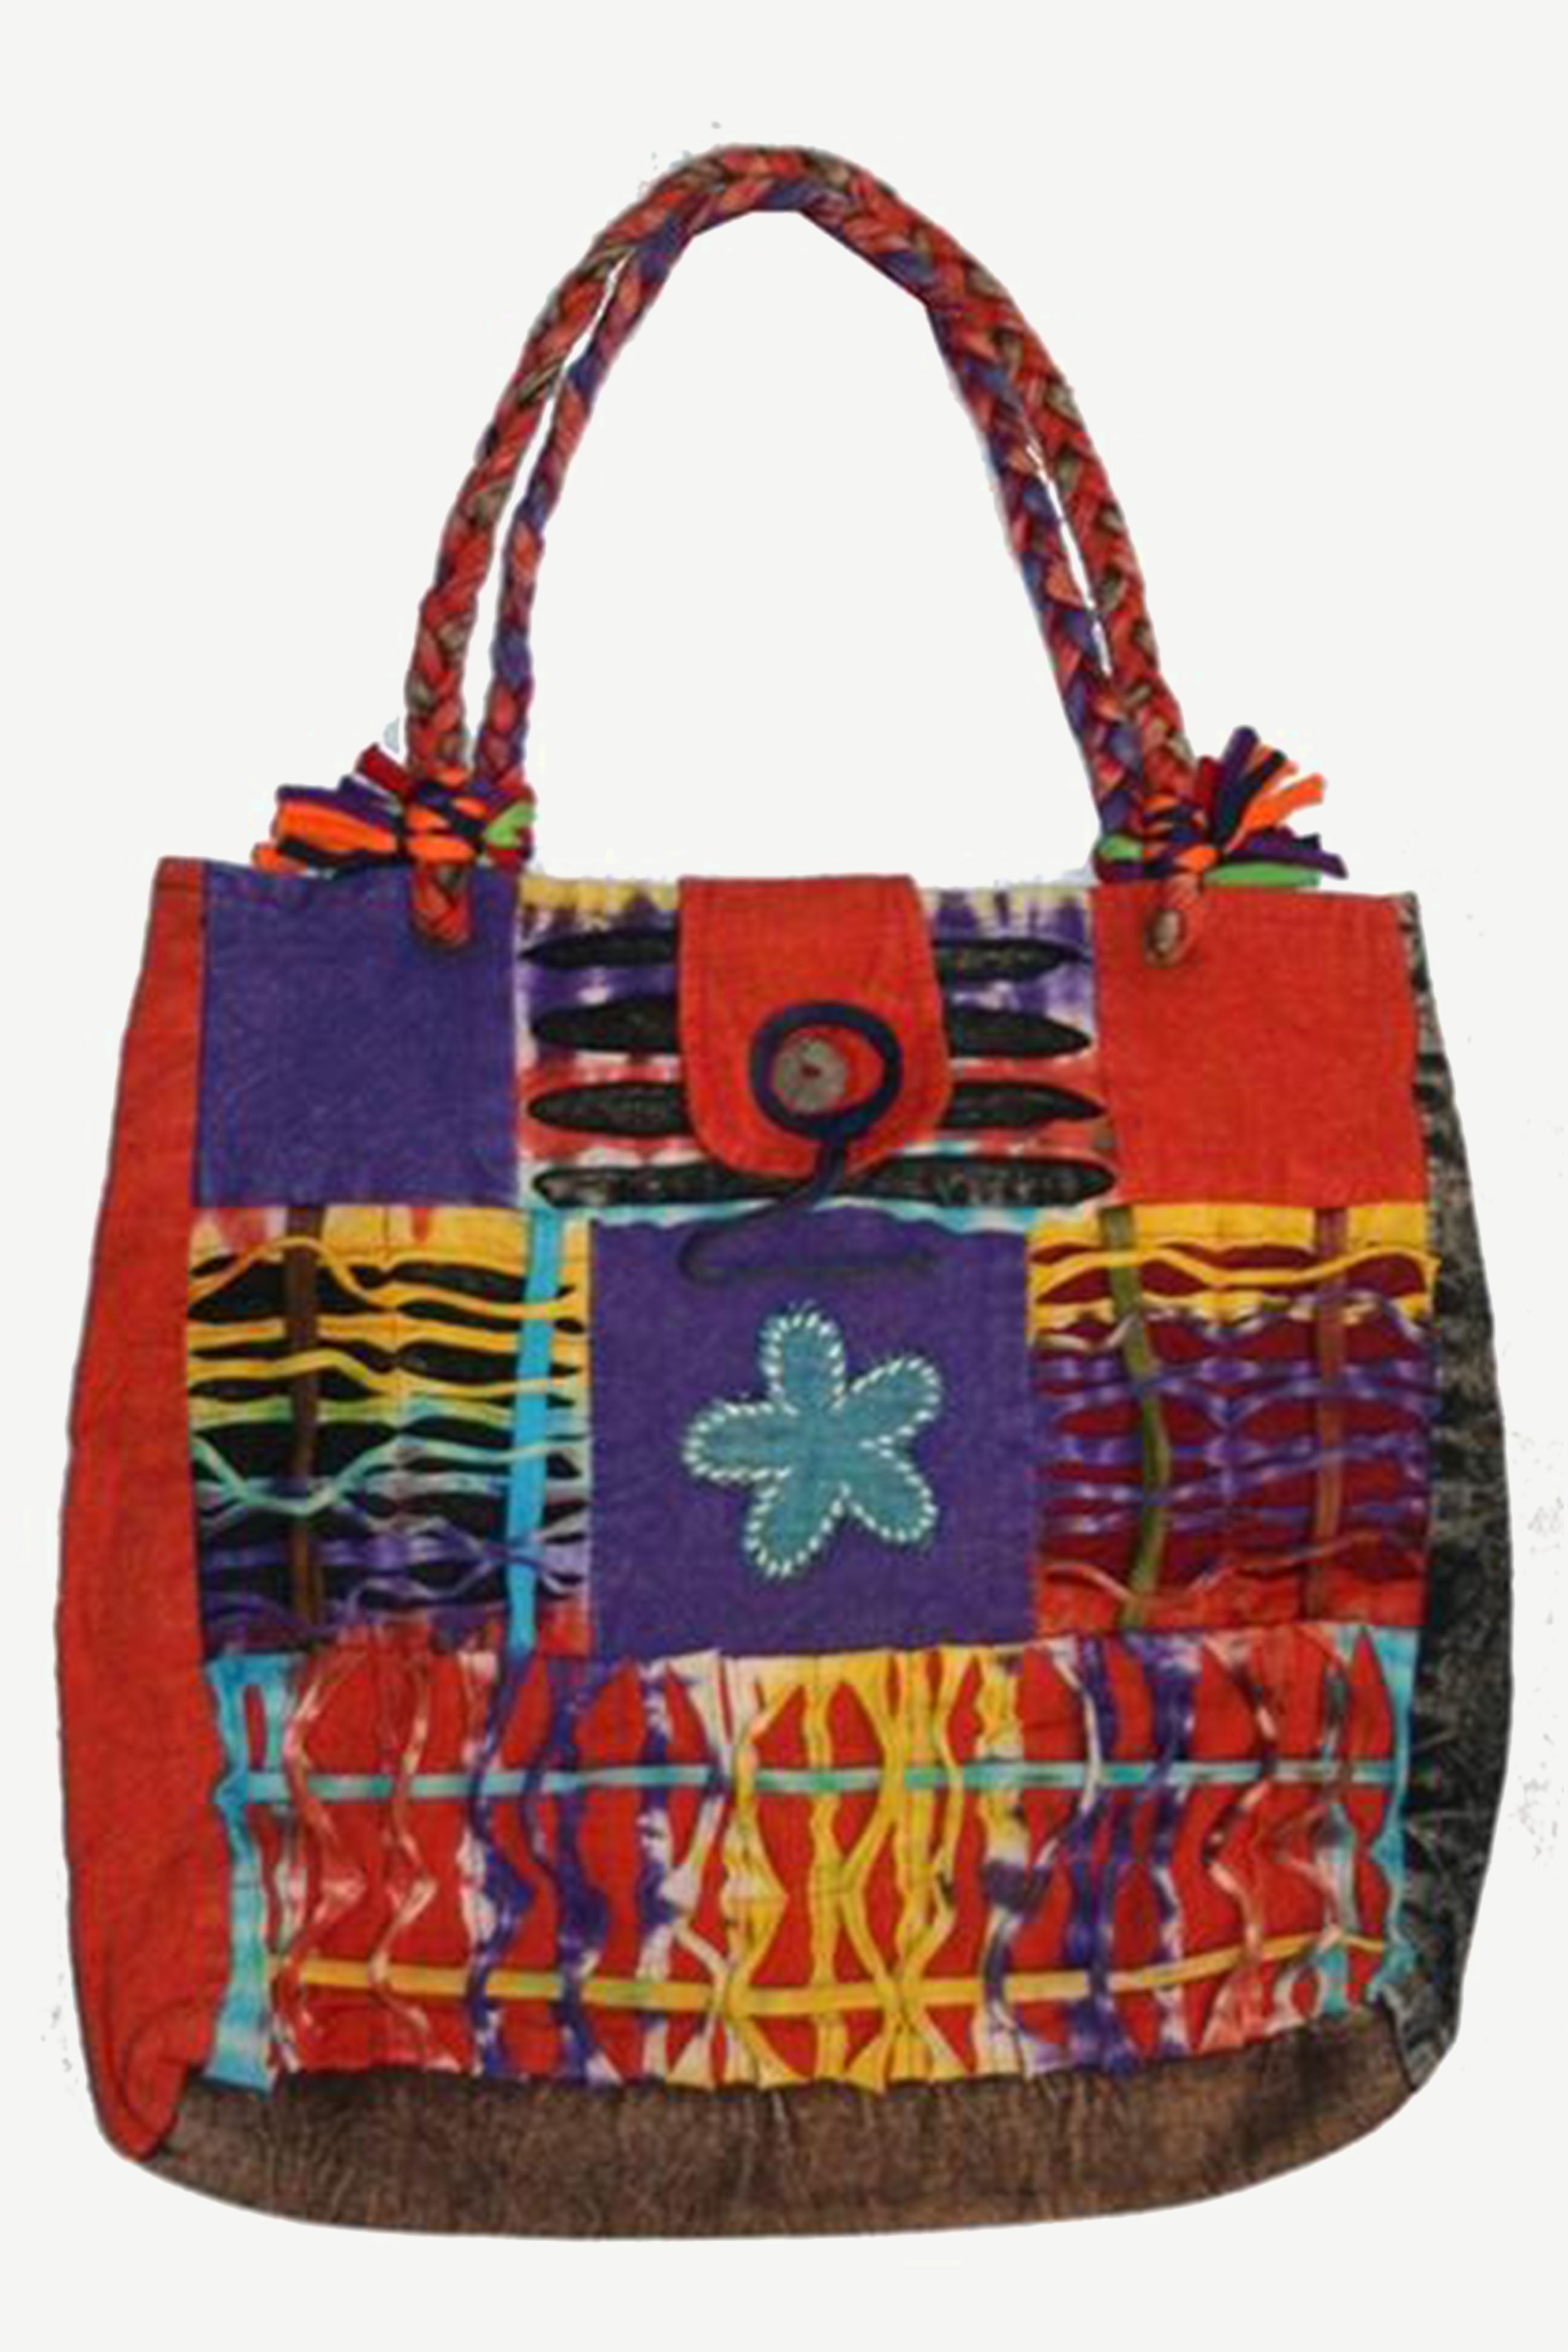 Vintage Kantha Bag Handmade Shoulder Handbag Patchwork Cotton Kantha Bag  Shopping Evening Sling Bag at Rs 848/piece | Bags in Jaipur | ID:  2853270160455